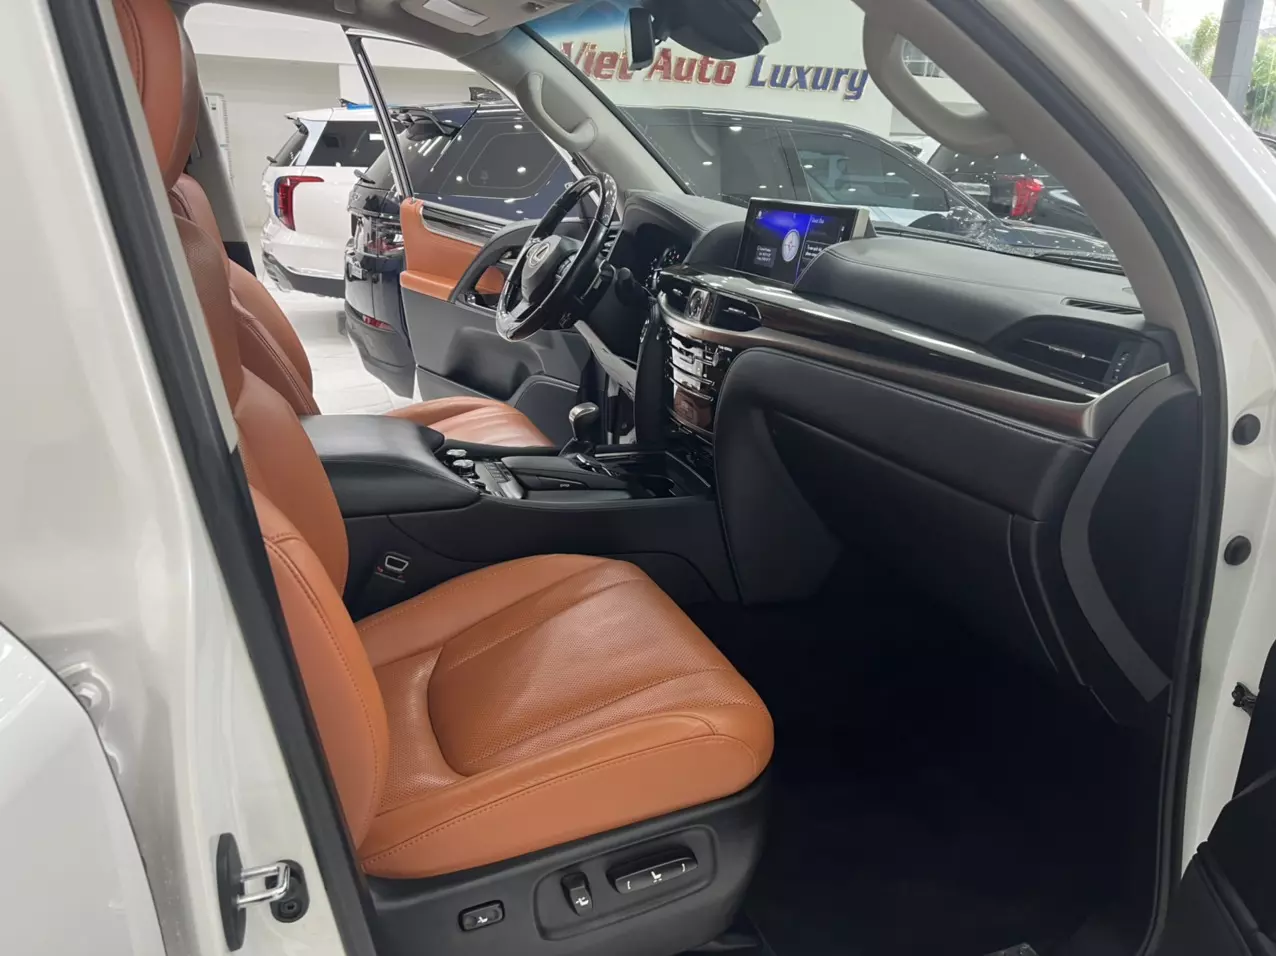 Bán Lexus LX570 Trung Đông sản xuất năm 2016 màu Trắng nội thất Nâu da bò, xe đăng ký tên cá nhân đi hơn 10v Km-6